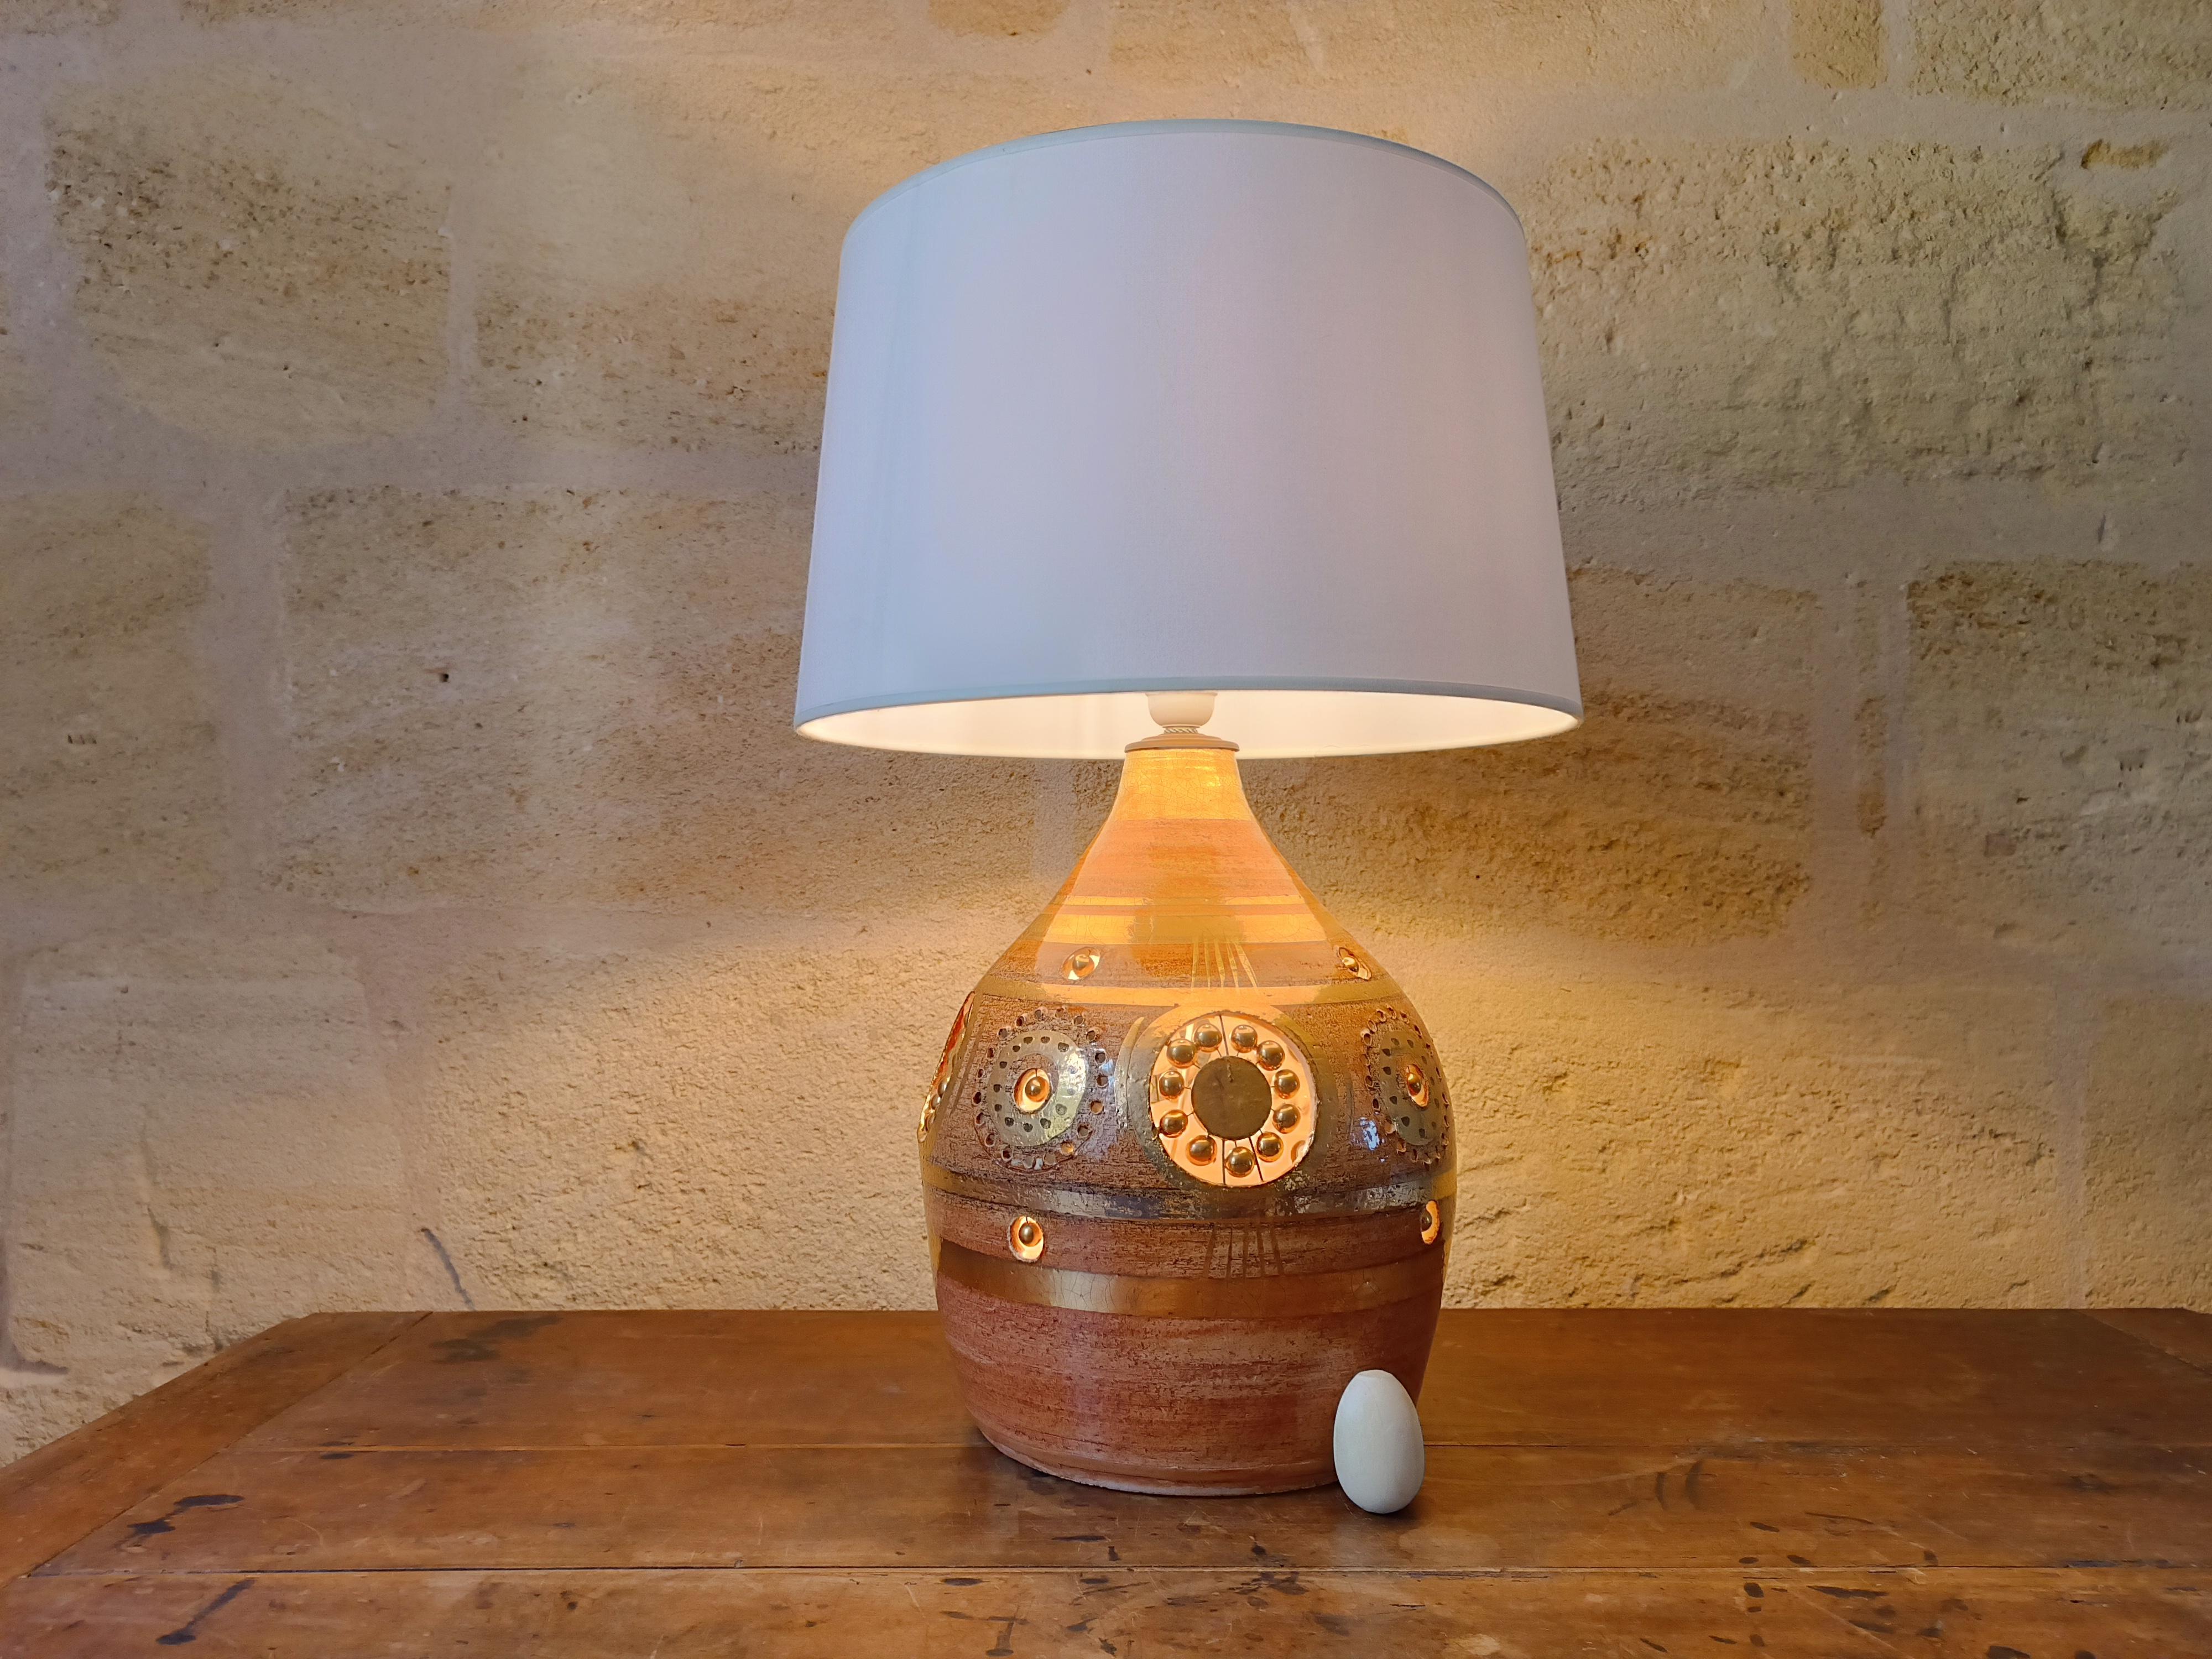 Französische Keramik-Tischlampe von Georges Pelletier, 1970er Jahre

Es ist eine schöne Keramiklampe. Sie bietet eine doppelte Beleuchtung, da sich eine zweite Glühbirne im Inneren des Lampensockels befindet. Das Licht ist sehr weich und hebt die